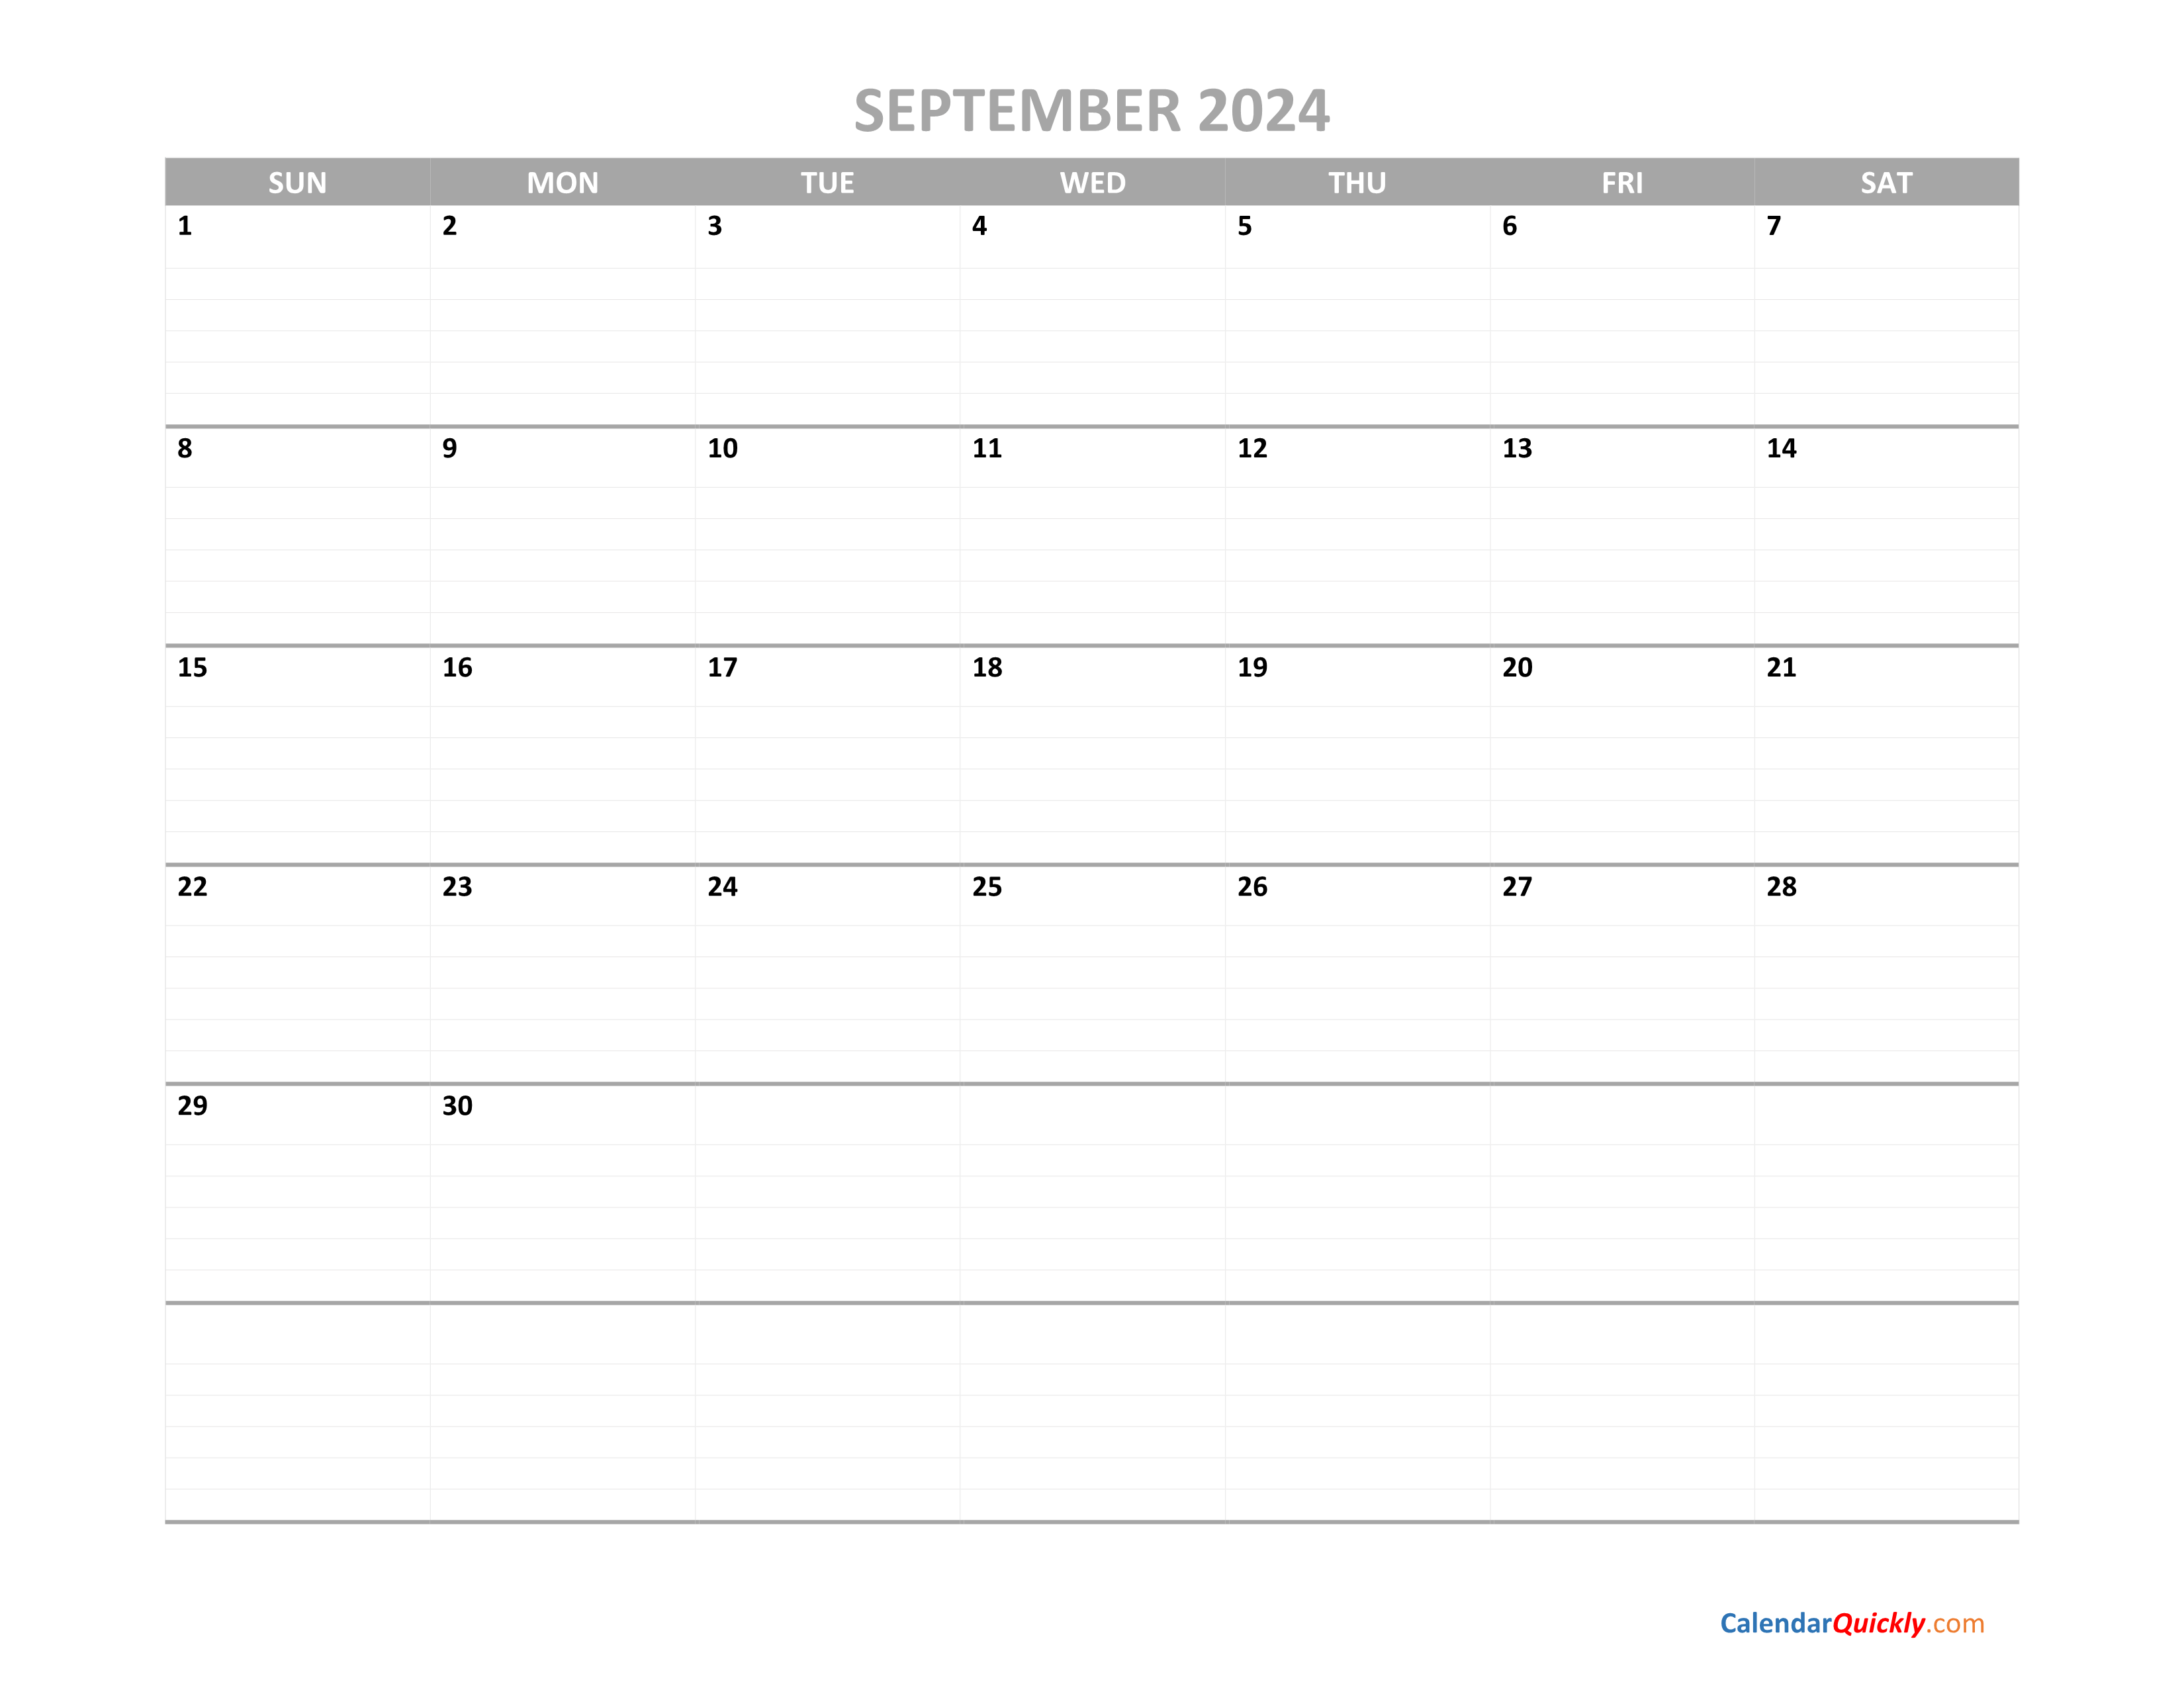 September Calendar 2024 Printable Calendar Quickly